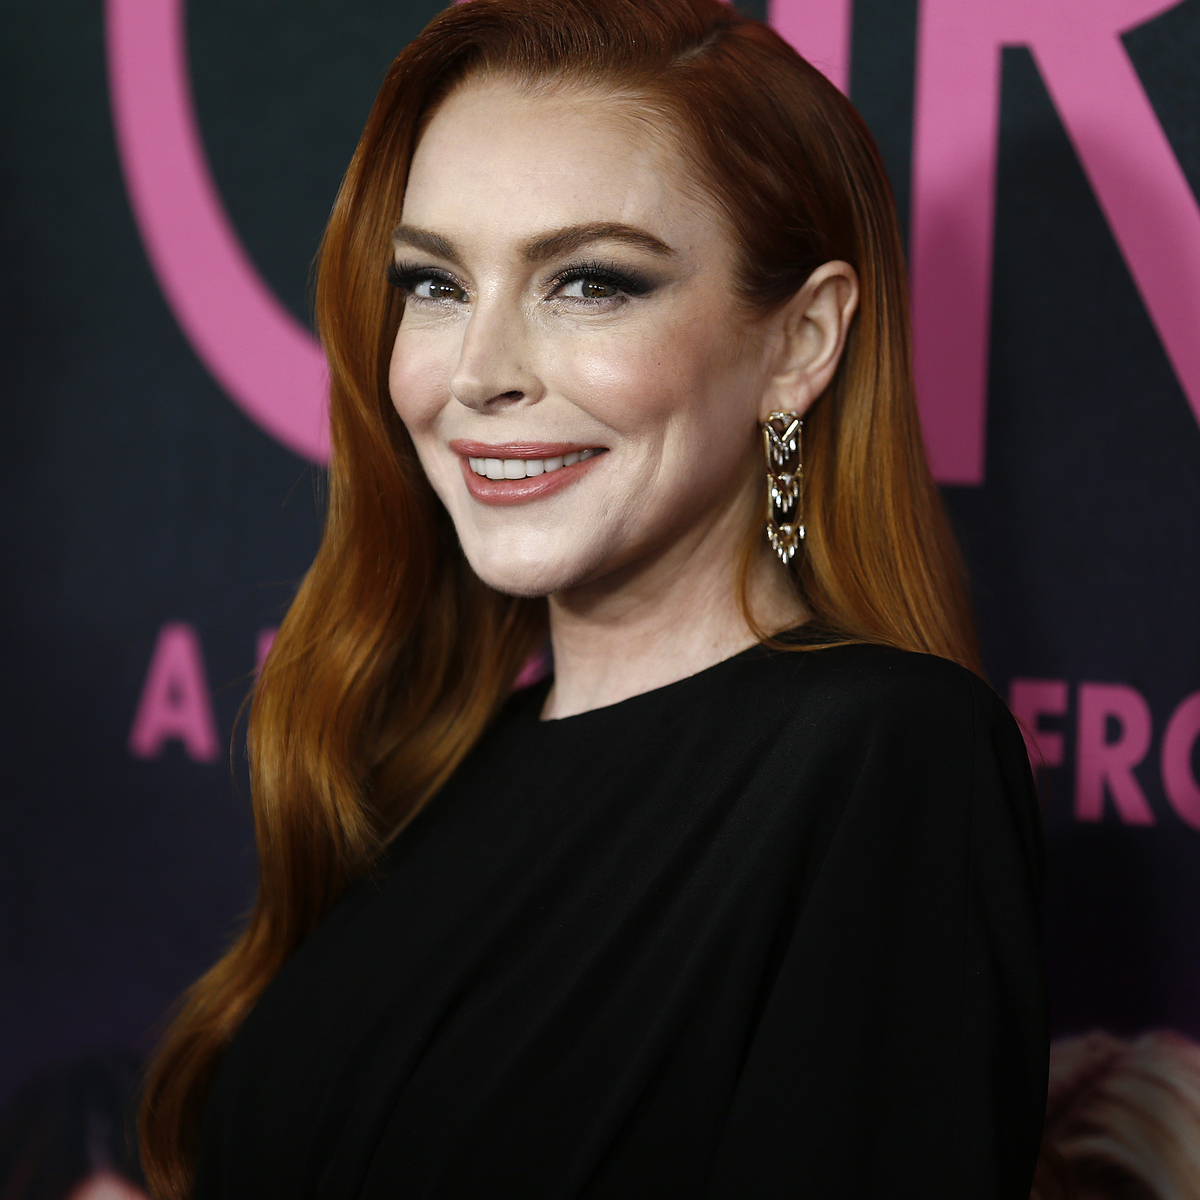 Mean Girls Joke Aimed at Lindsay Lohan Cut From Digital Release